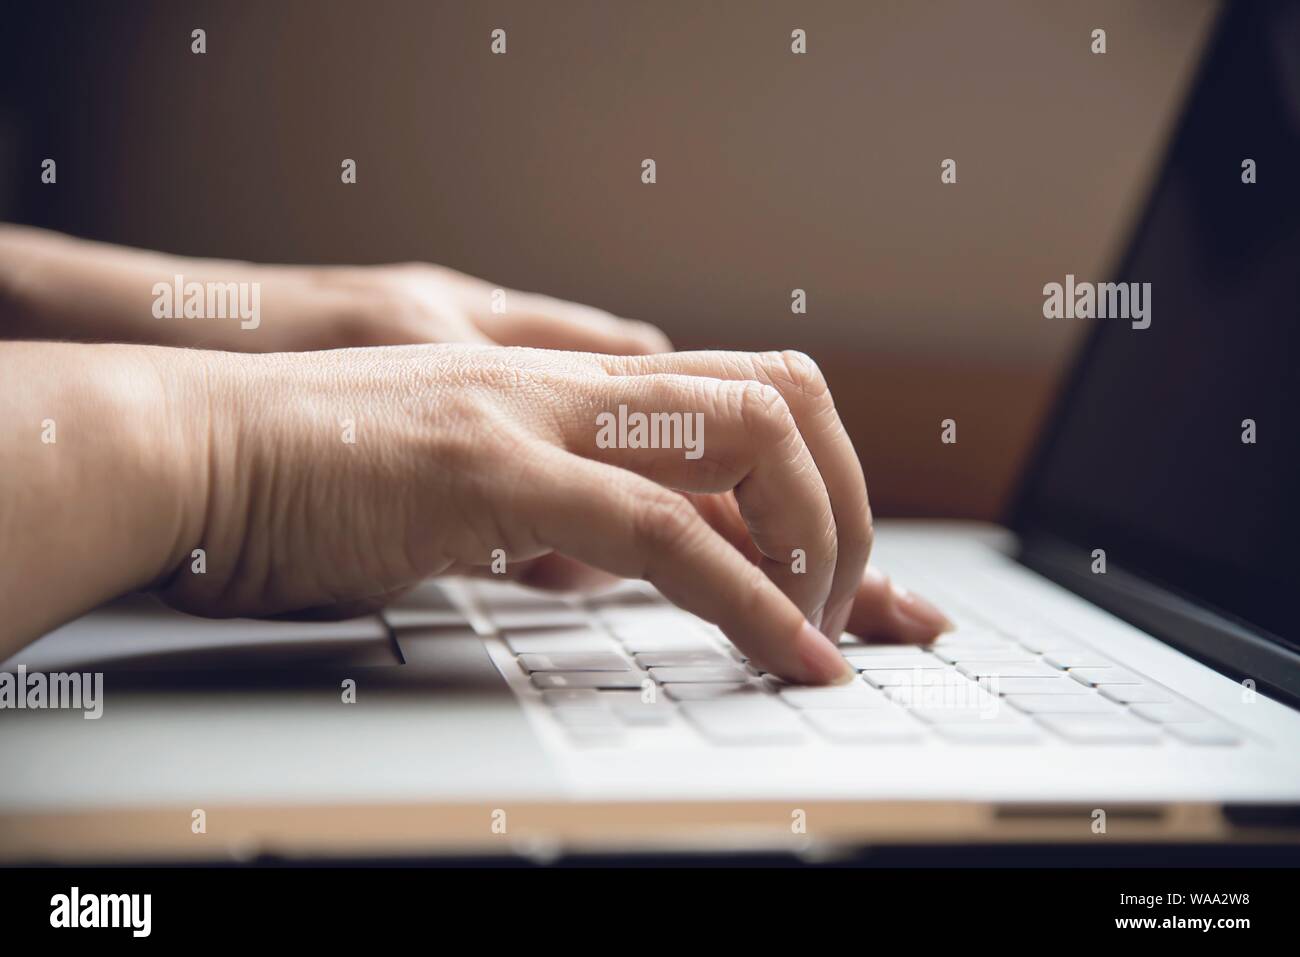 Touchez ou appuyez sur Lady finger clavier ordinateur portable - les personnes travaillant avec technologie concept Banque D'Images